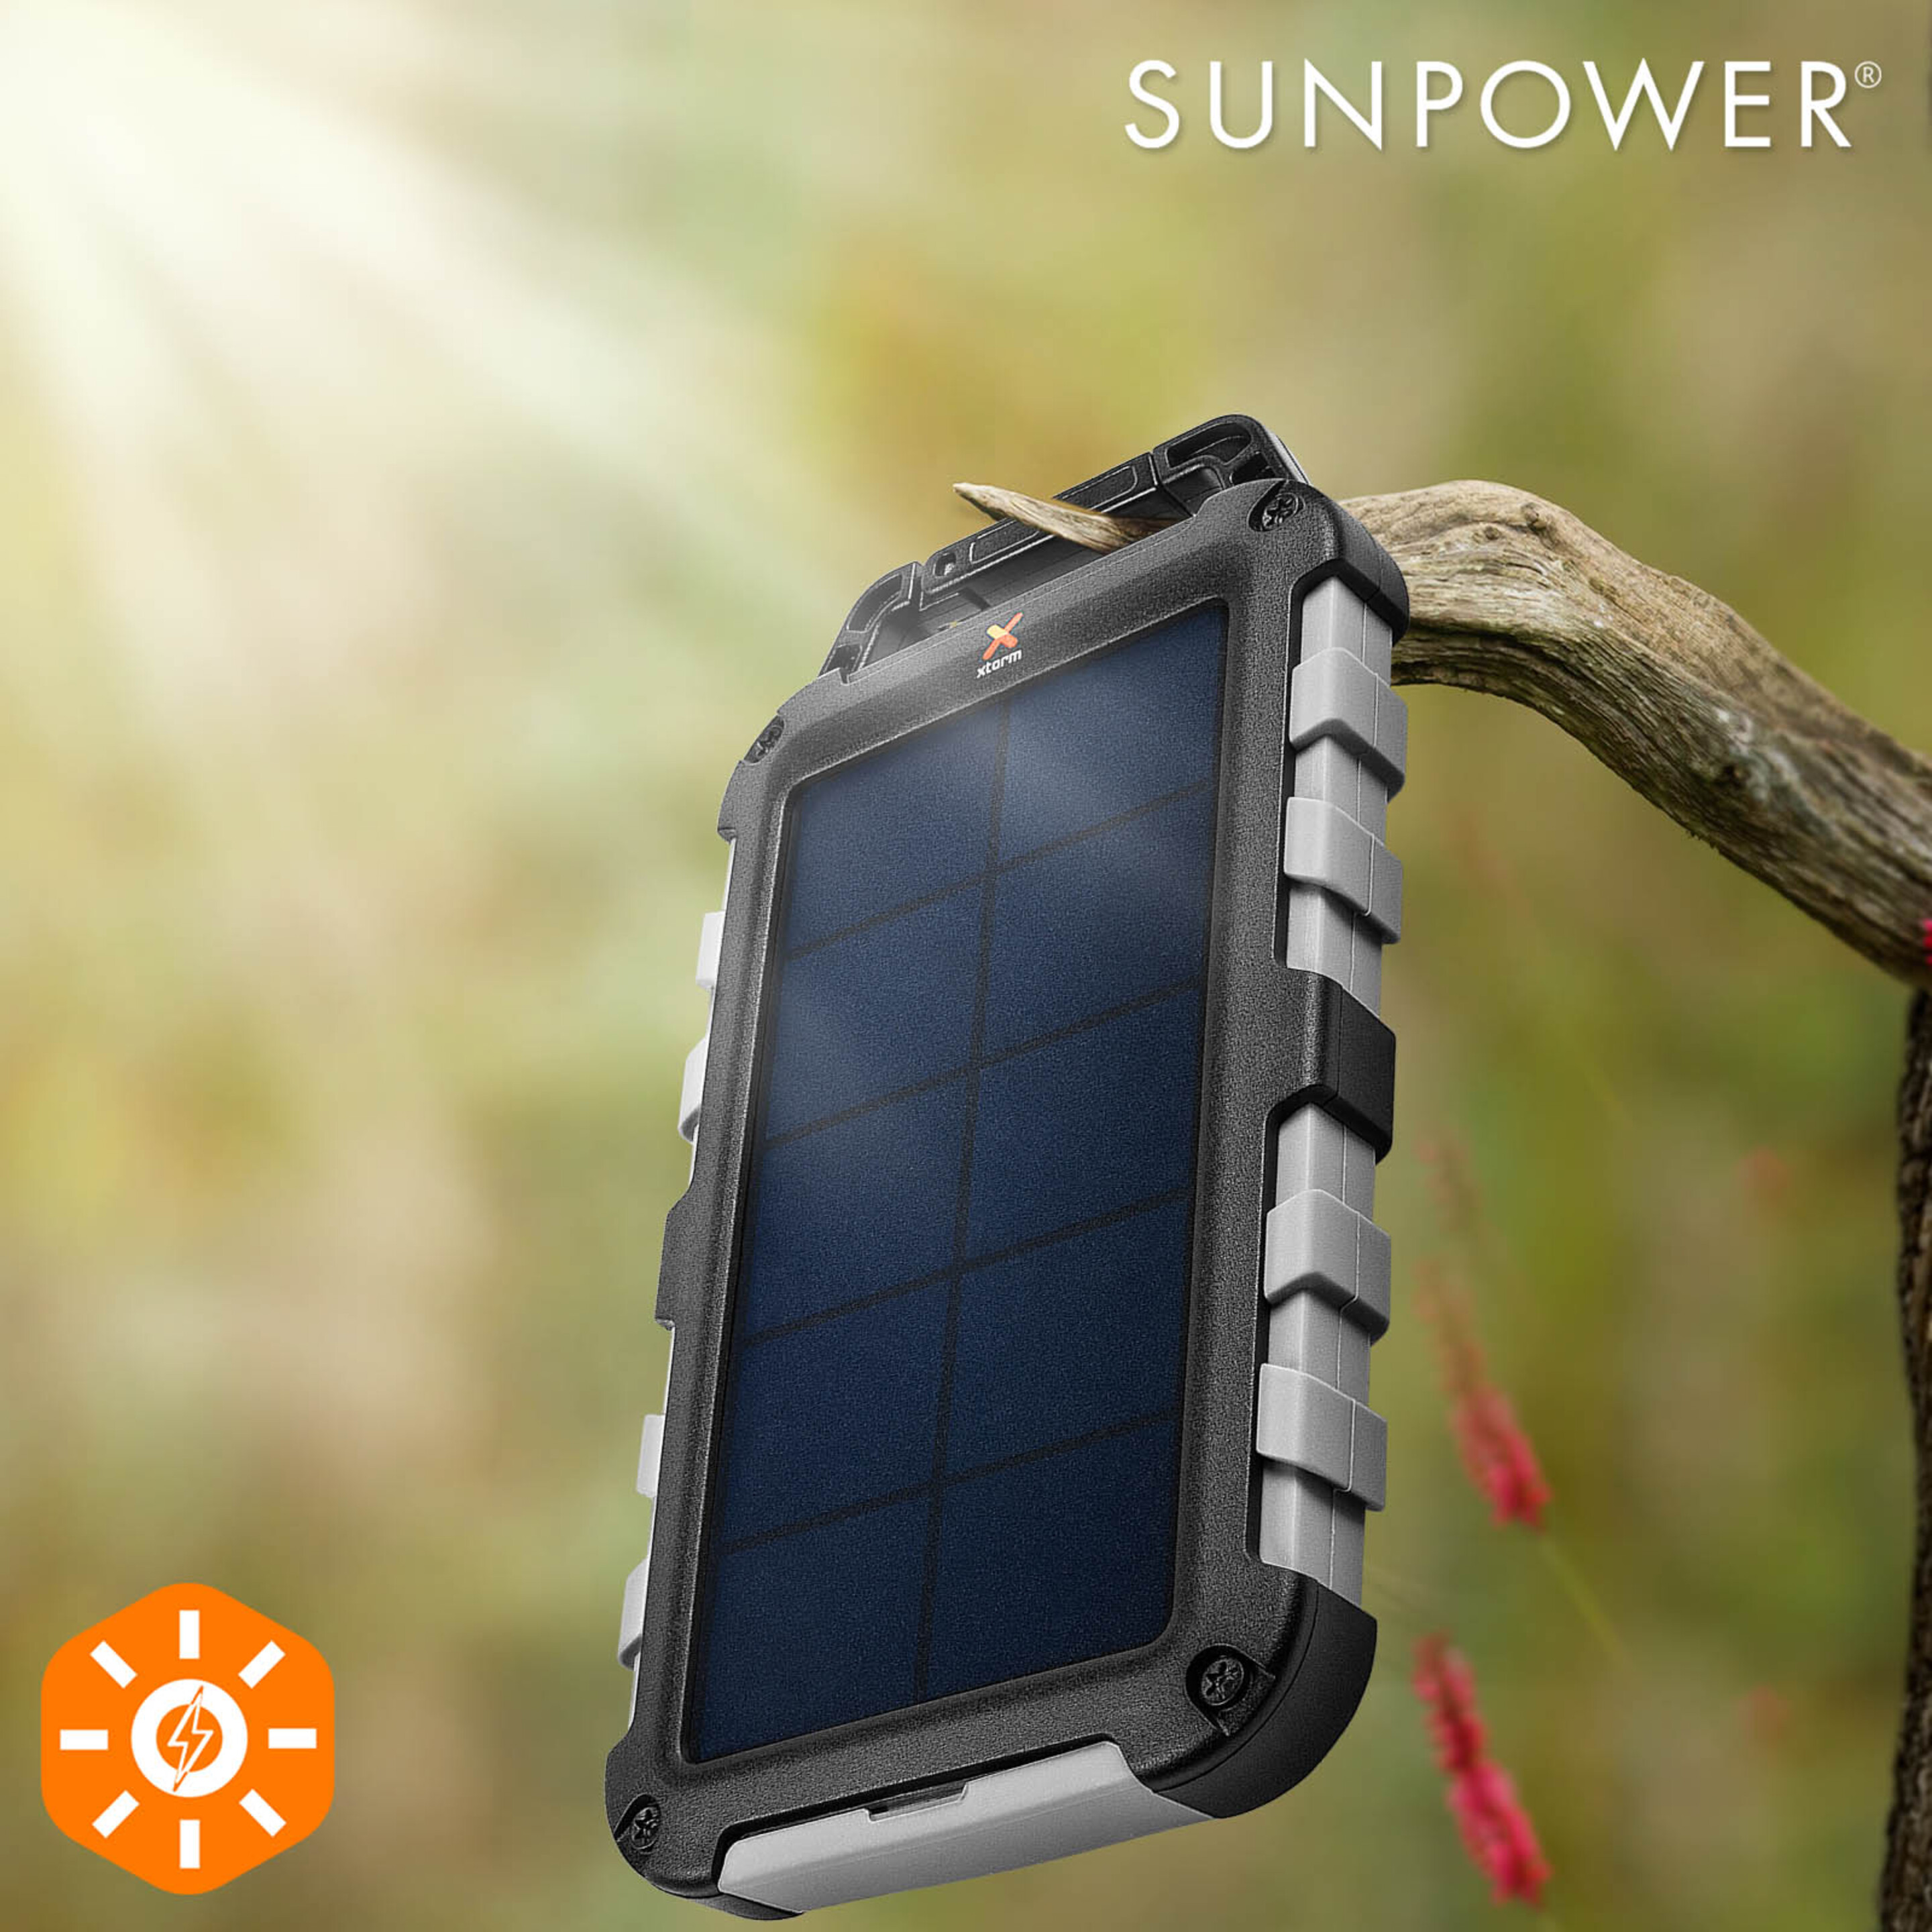 Batería Solar Externa 2x Usb 2.1a 10000mah Ipx4 Resistente Xtorm Robust